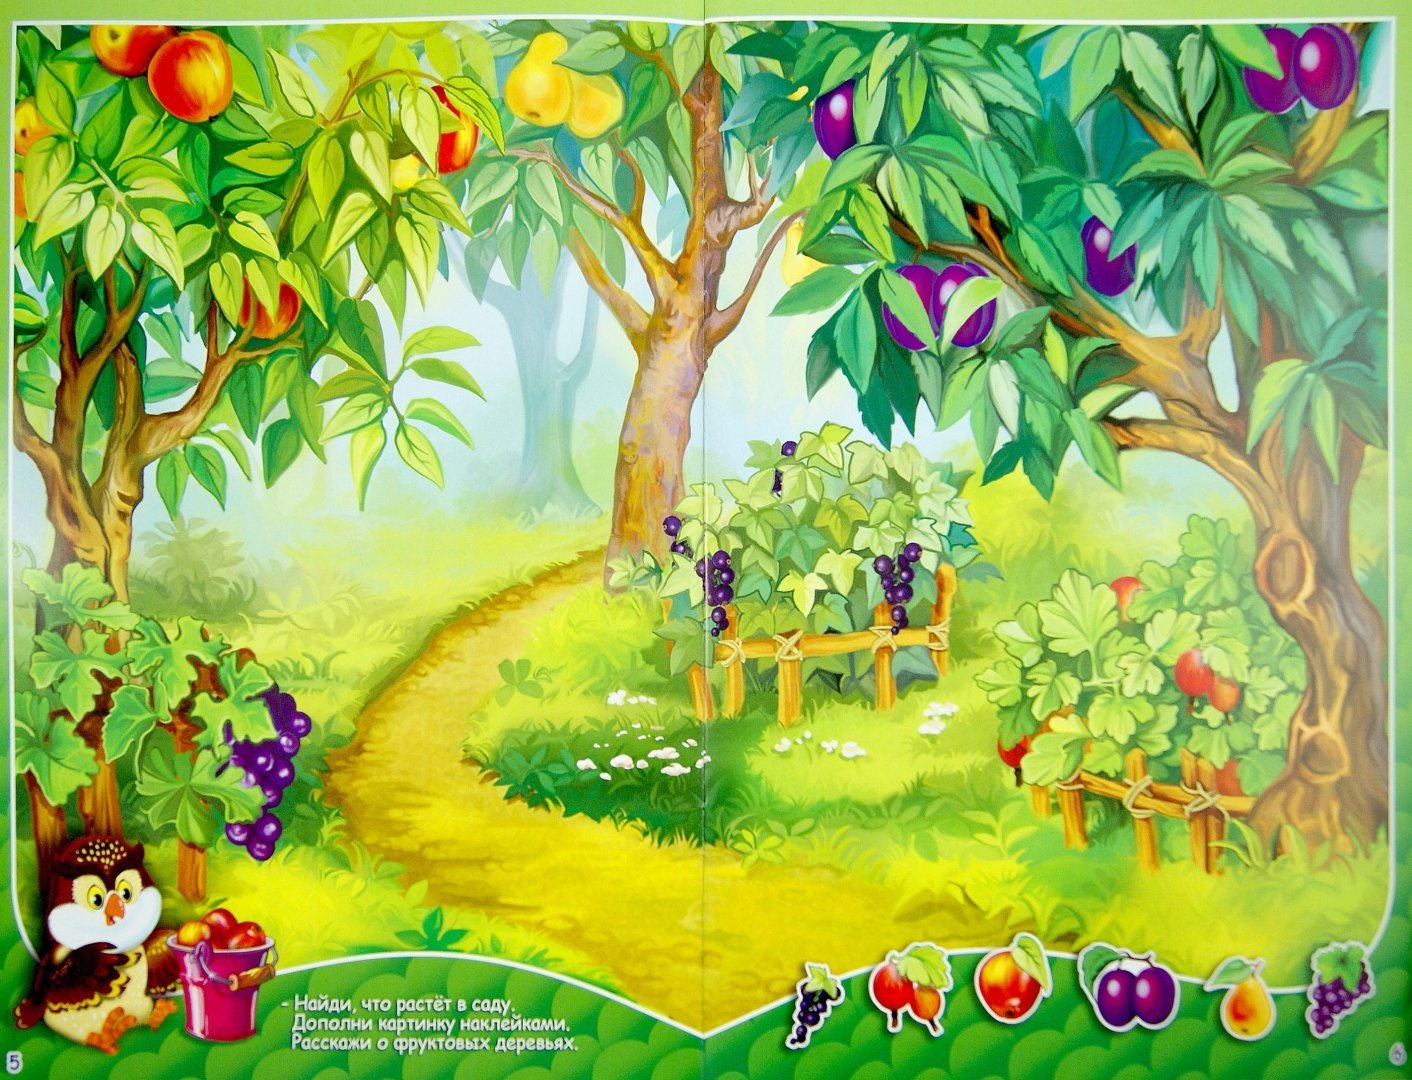 Картинка сад для детей. Фруктовый сад дети. Дети в саду. Иллюстрация с изображением фруктового сада. Сад мультяшный.